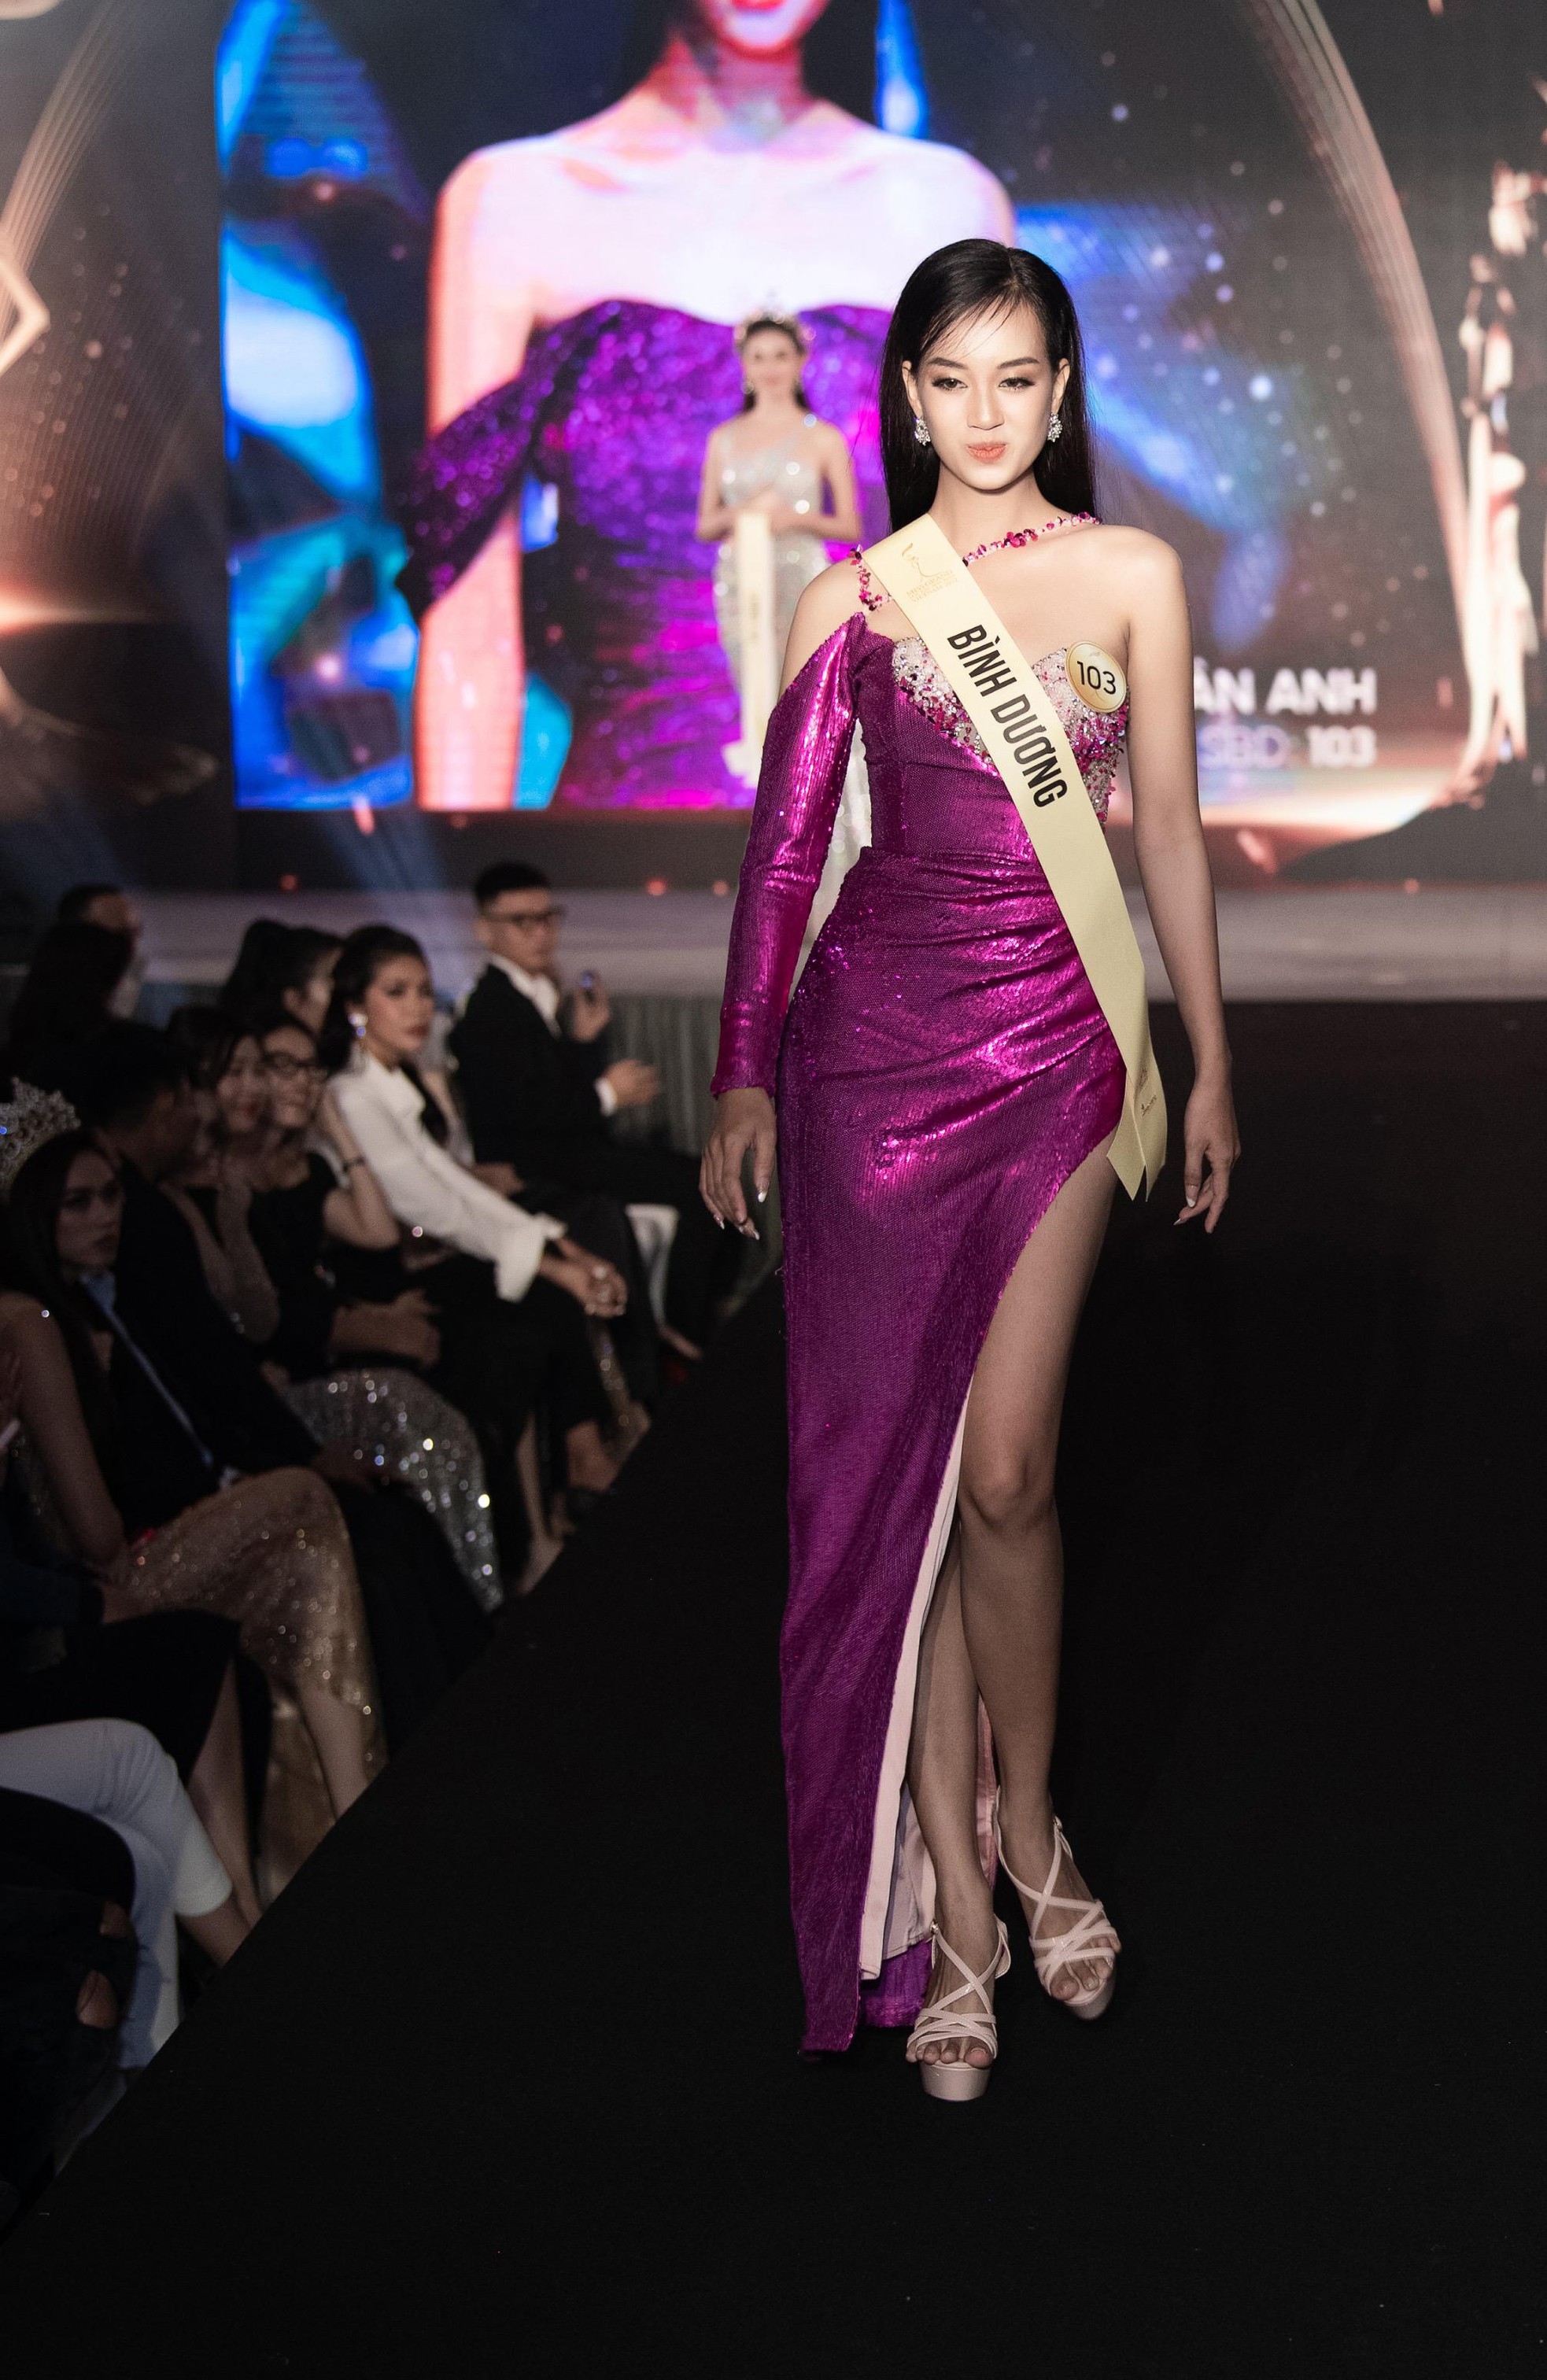 Mai Ngô, Quỳnh Châu tung chiêu catwalk độc đáo tại lễ nhận sash của Miss Grand Vietnam 2022-8